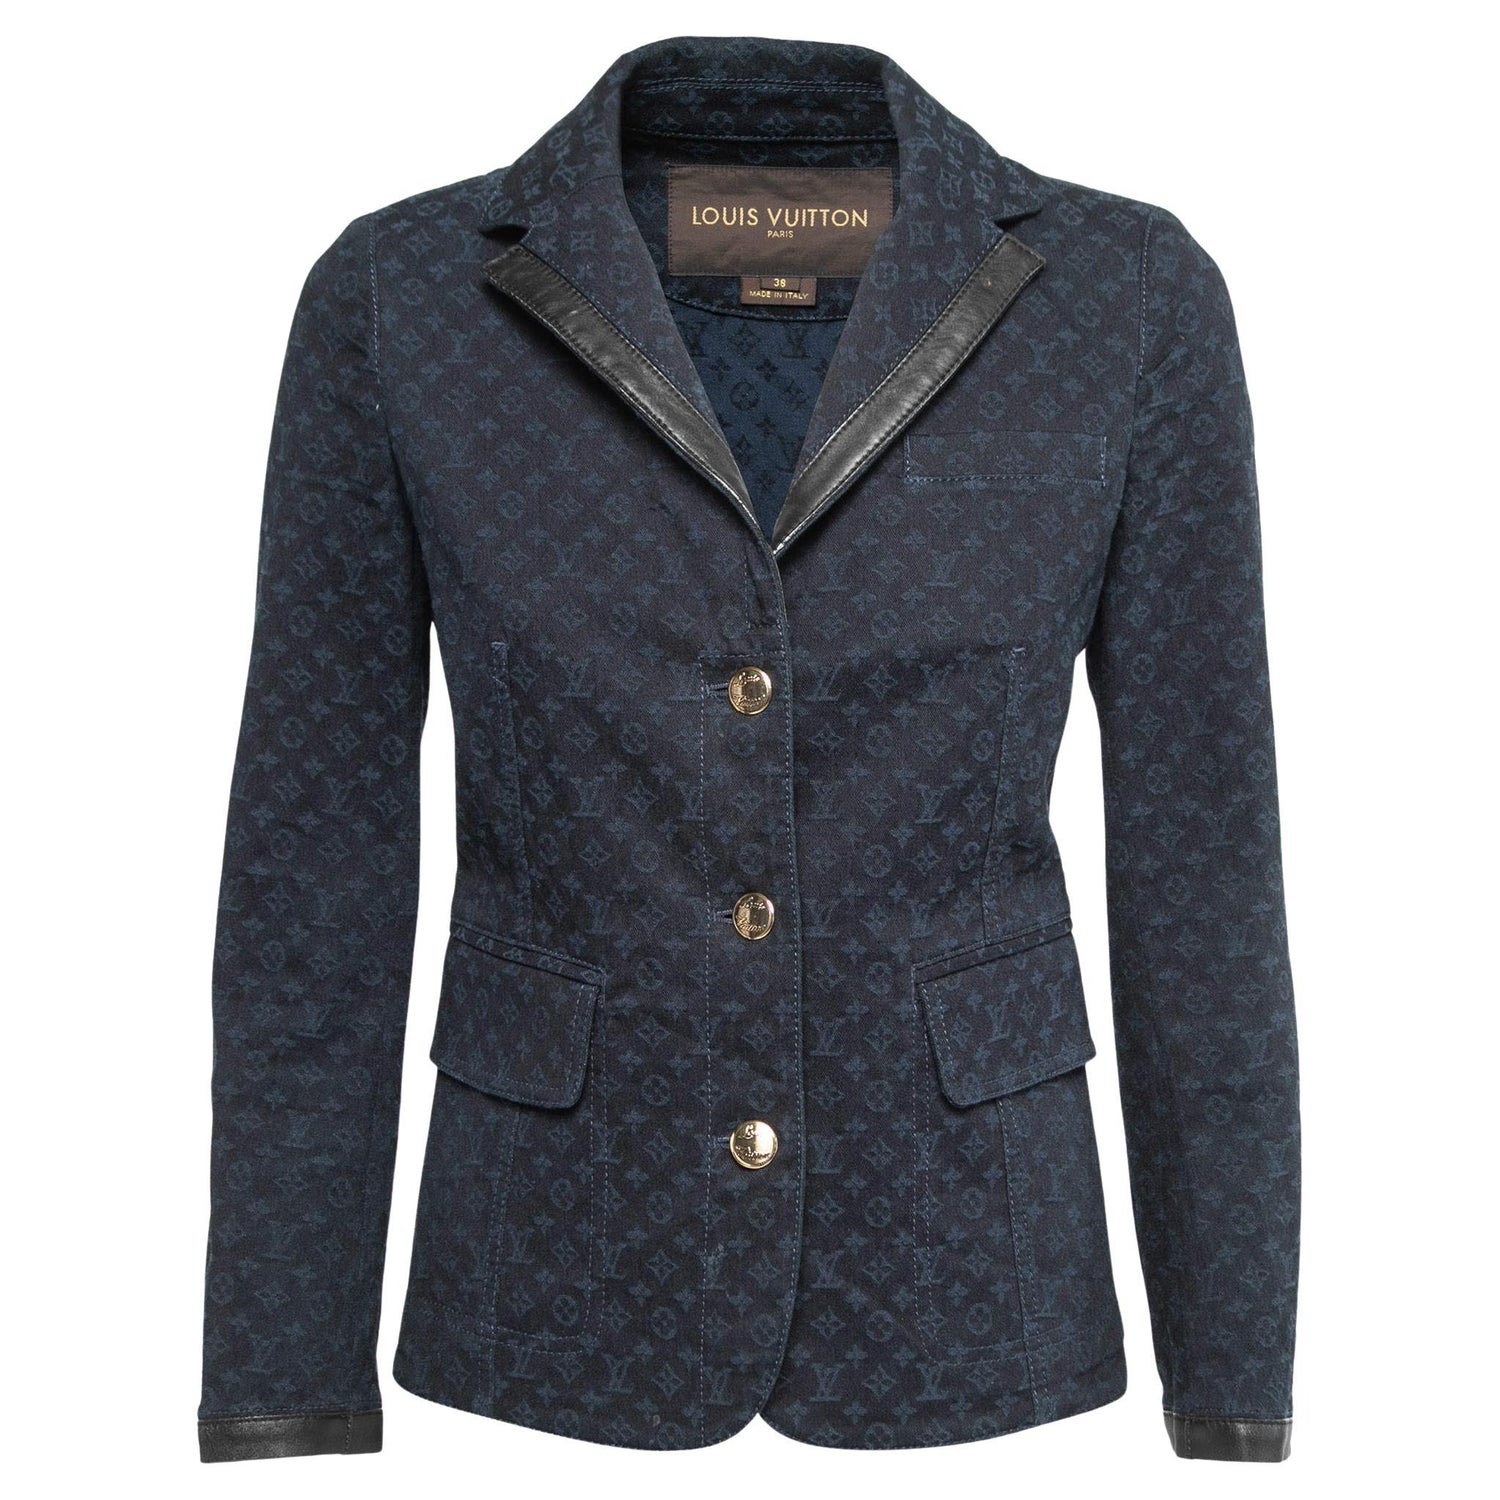 Louis Vuitton - Authenticated Jacket - Denim - Jeans Blue Plain For Man, Very Good condition